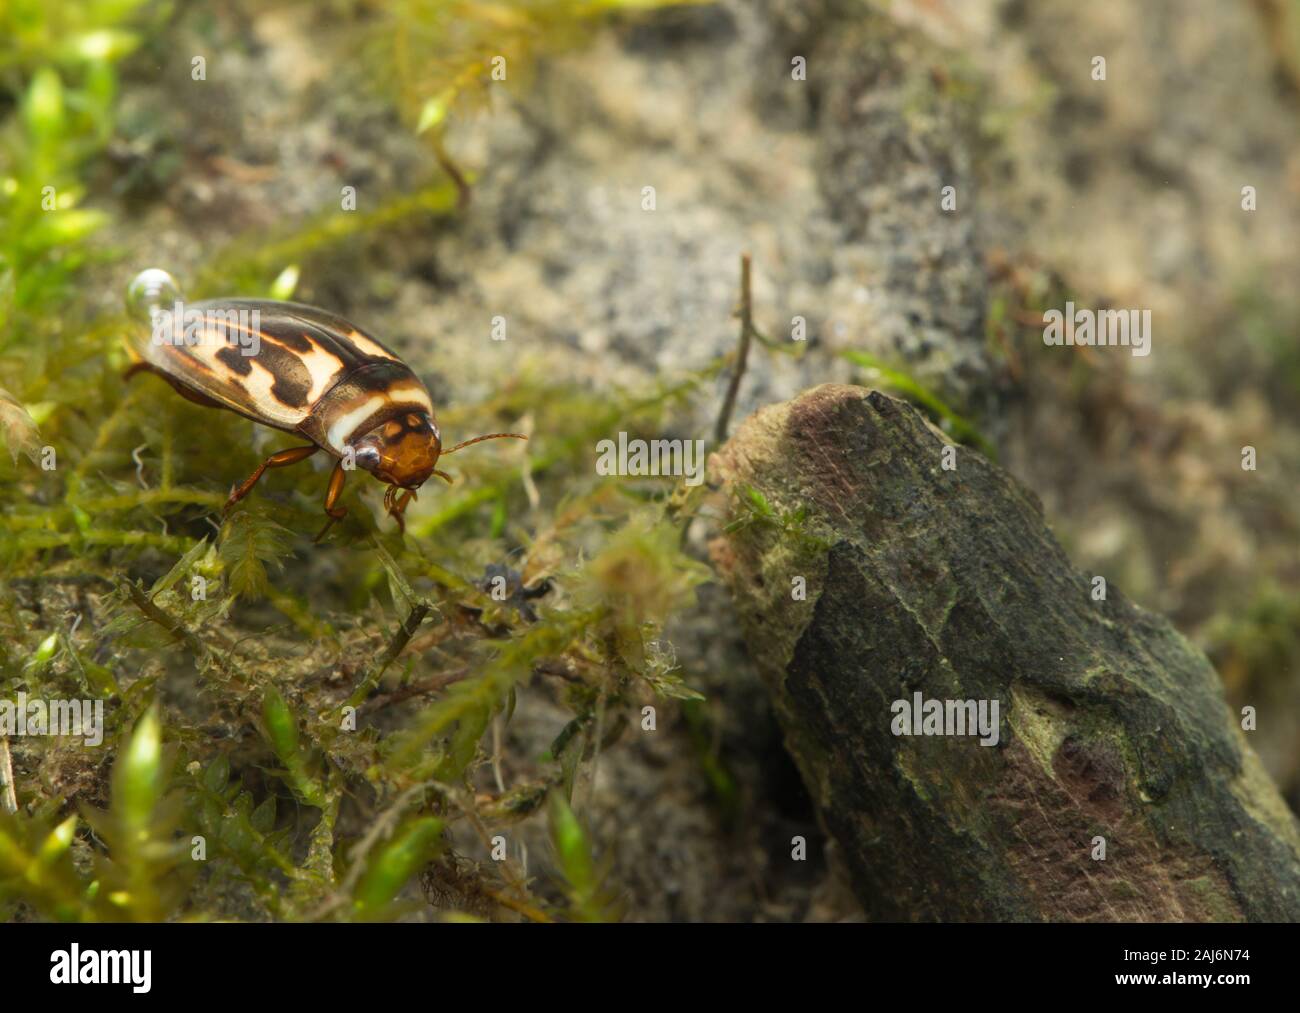 Diving beetle (Platambus maculatus) Stock Photo